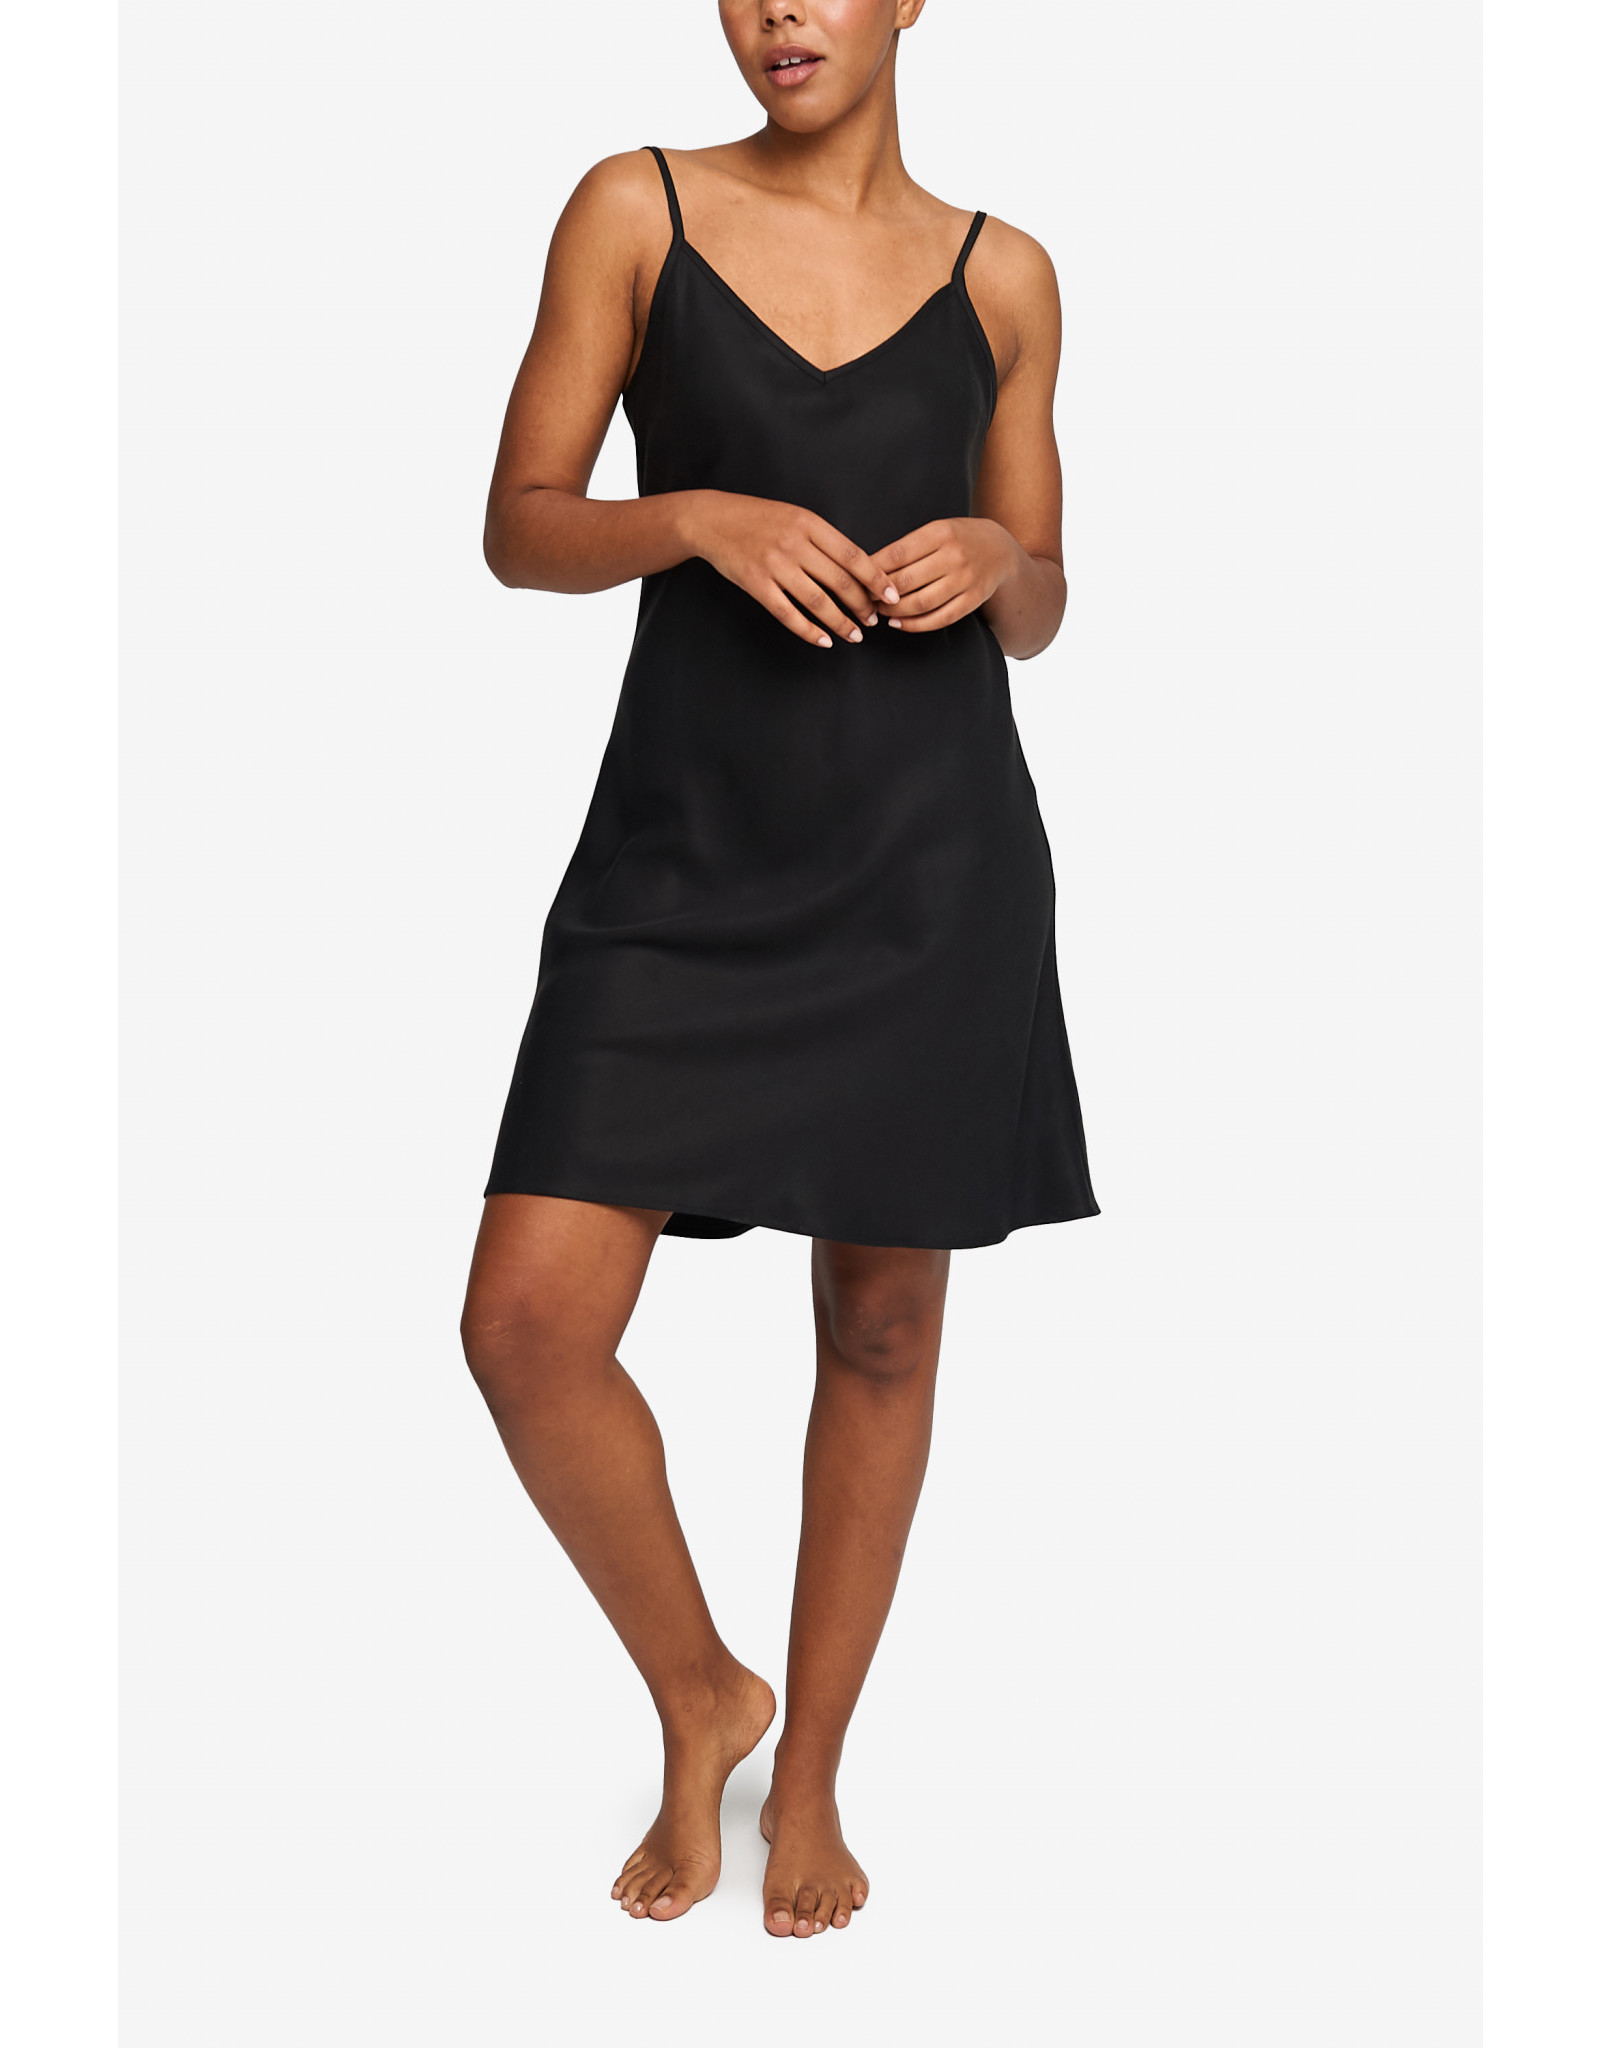 https://cdn.shoplightspeed.com/shops/635977/files/39683690/1600x2048x2/the-sleep-shirt-short-slip-dress.jpg